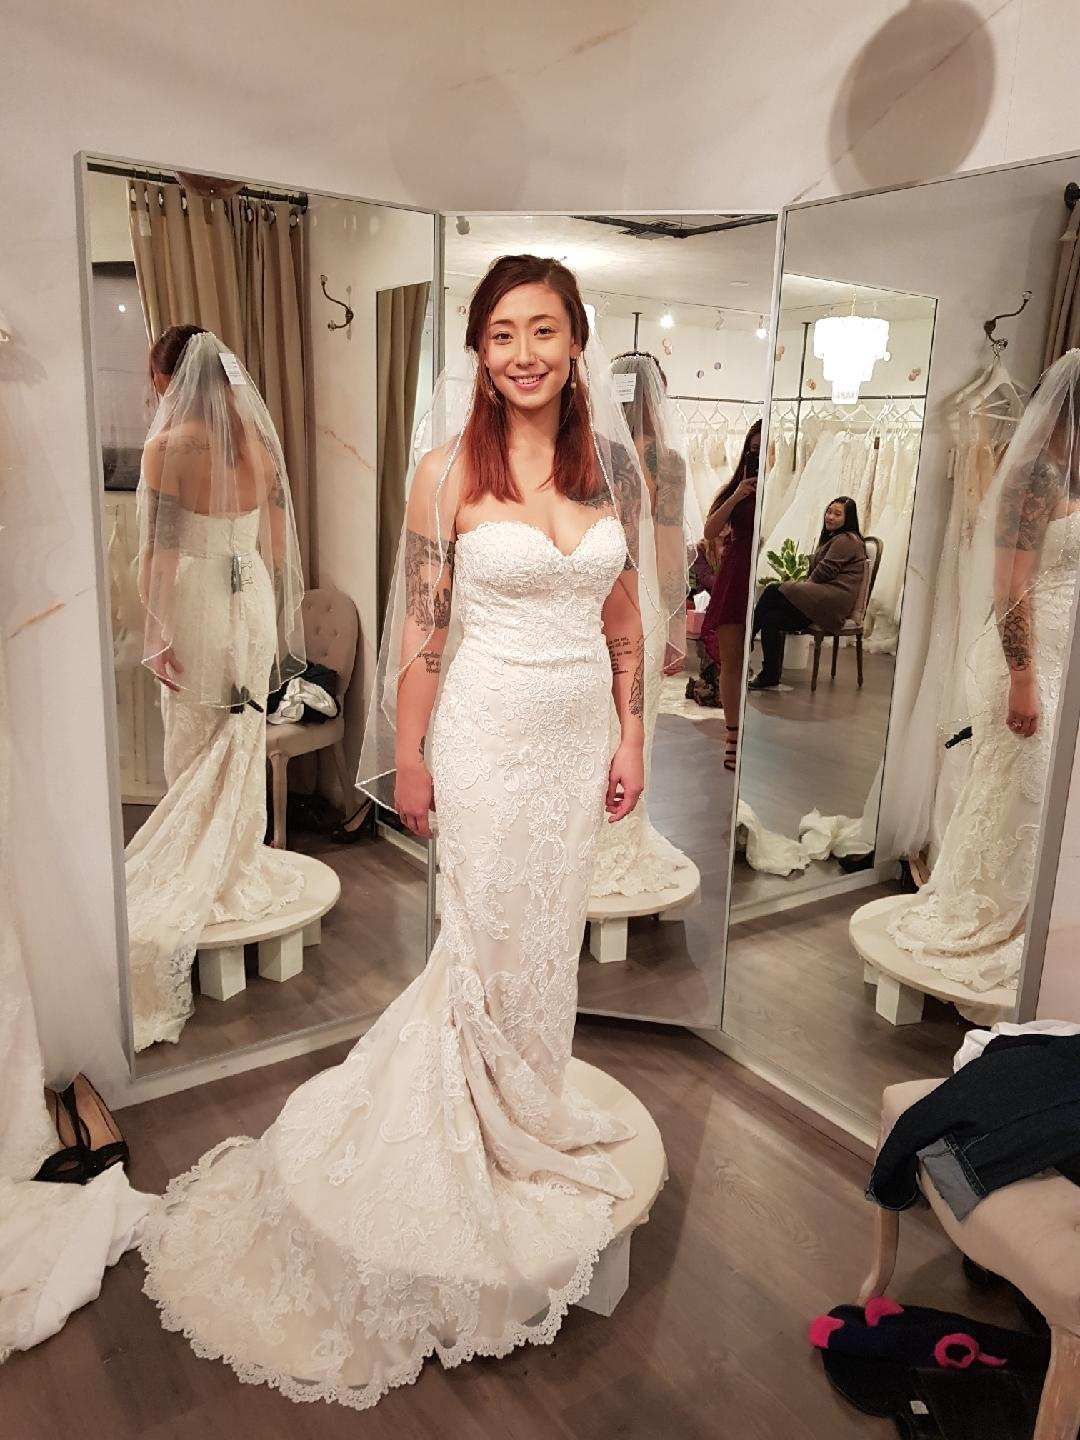 Wedding Dress, Size 4-6